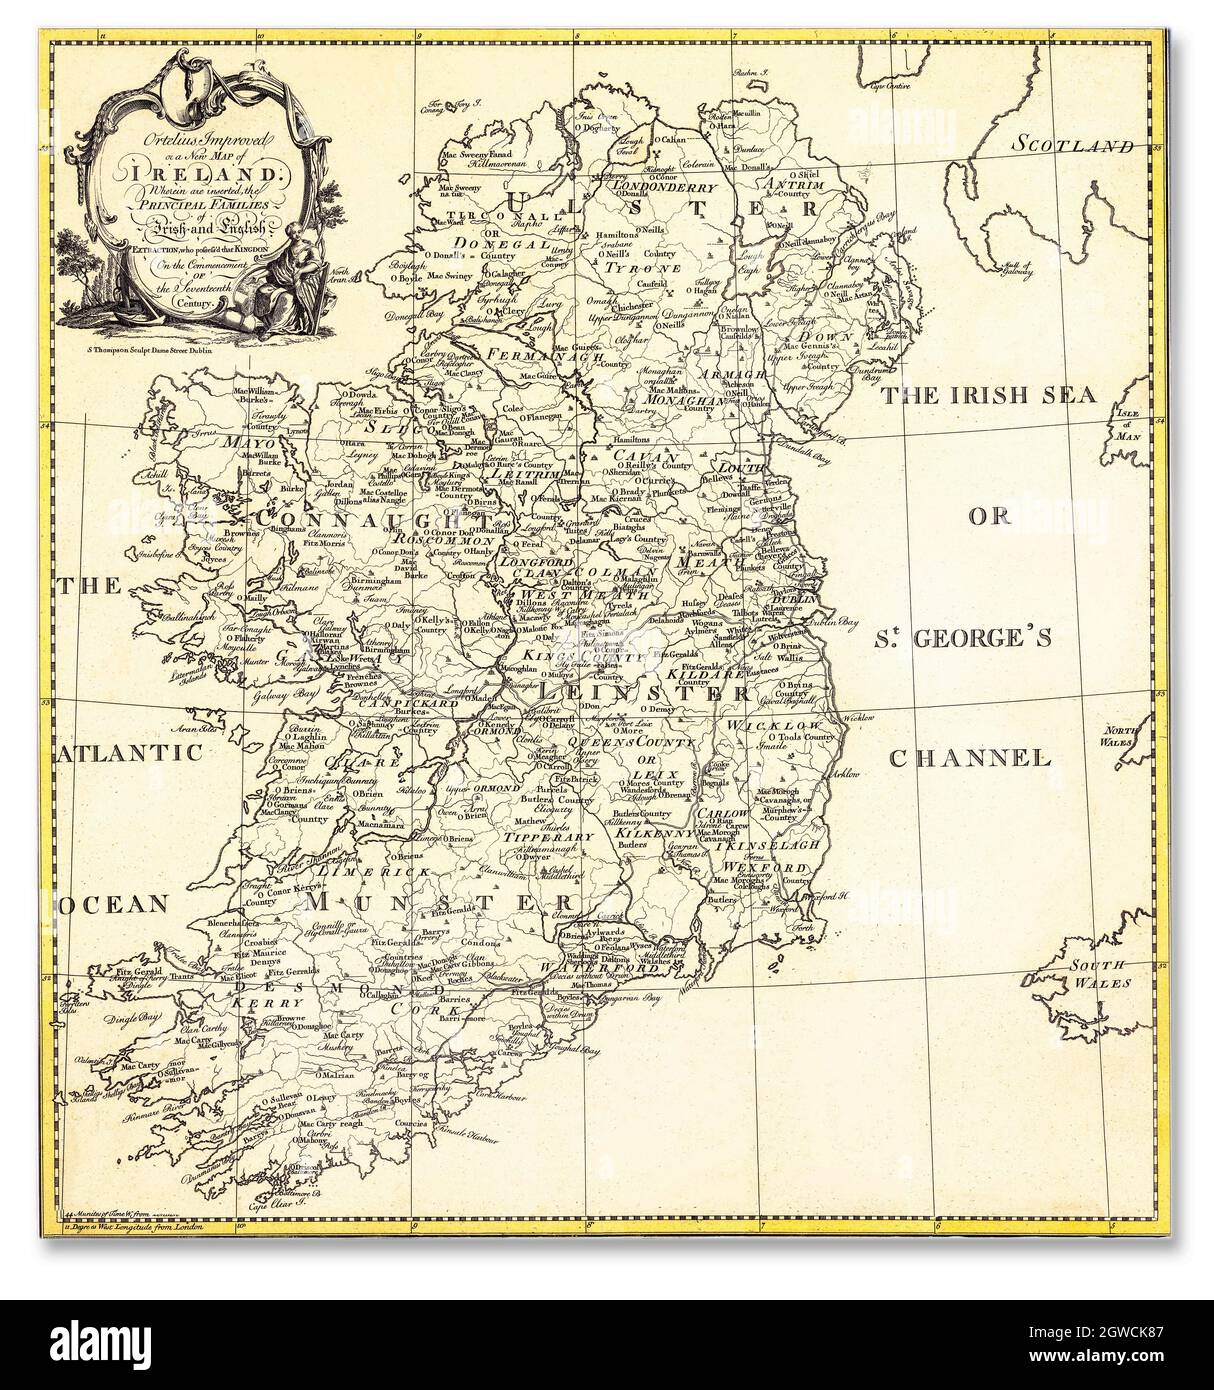 Ortelius verbessert, oder eine neue Karte von Irland: Wobei eingefügt sind die wichtigsten Familien der irischen und englischen Extraktion, besaß das Königreich zu Beginn des siebzehnten Jahrhunderts. Erstellt vom Kupferstecher S. Thompson, in Dublin, um 1795. Stockfoto